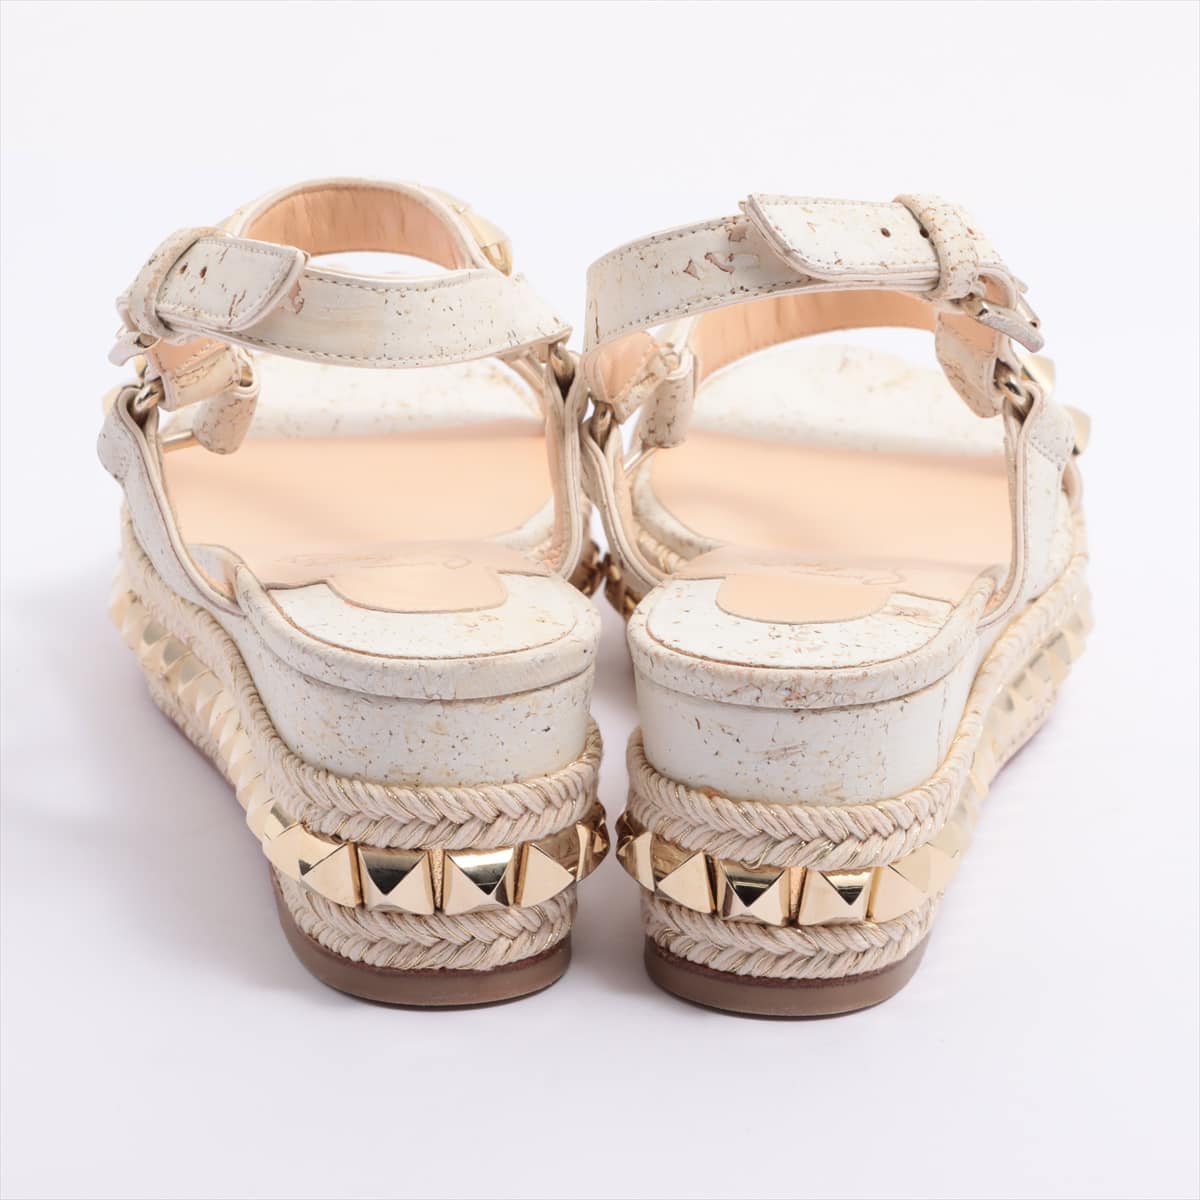 Christian Louboutin katacrow Cork Sandals 35 Ladies' White x gold Studs